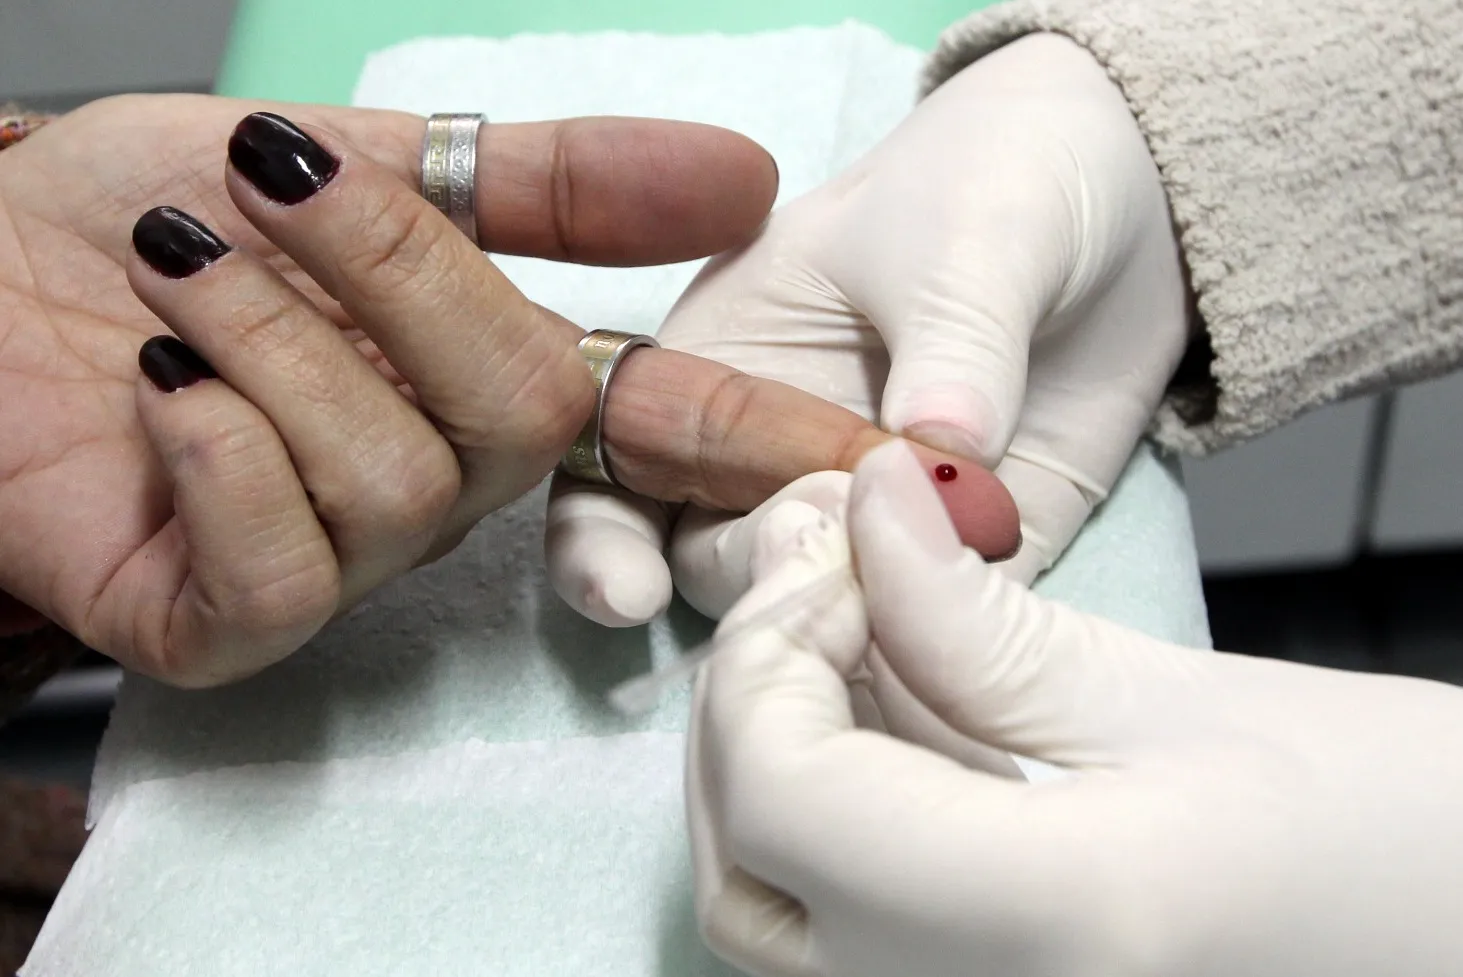 Os testes para detecção do HIV são importantes para o tratamento da doença, quando confirmados